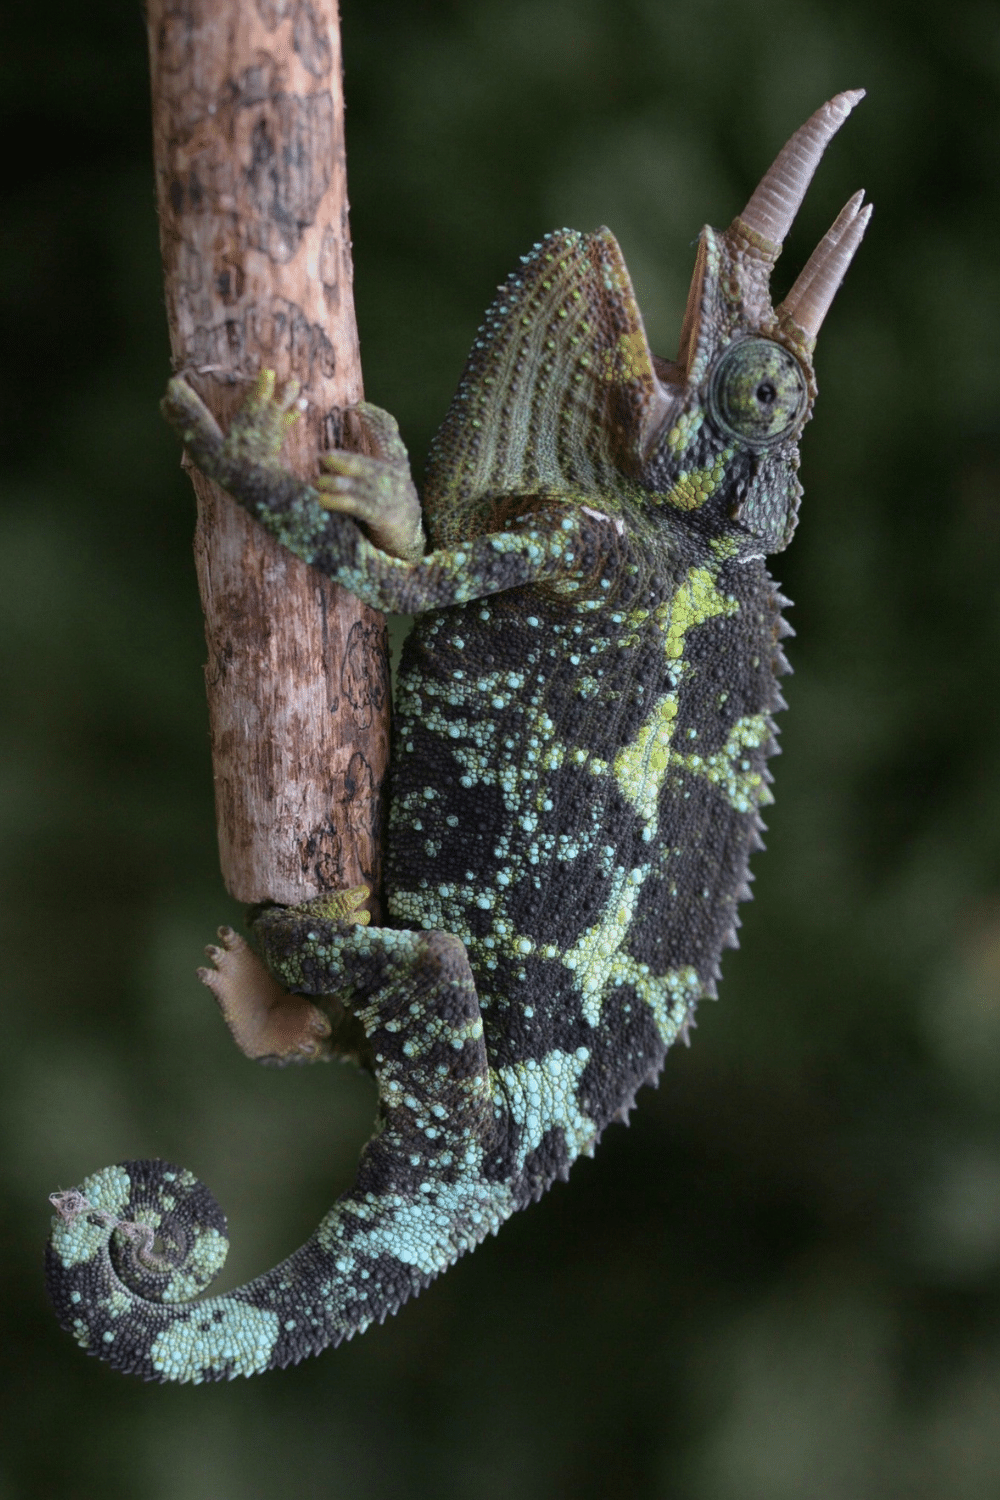 Adult Jackson Chameleons